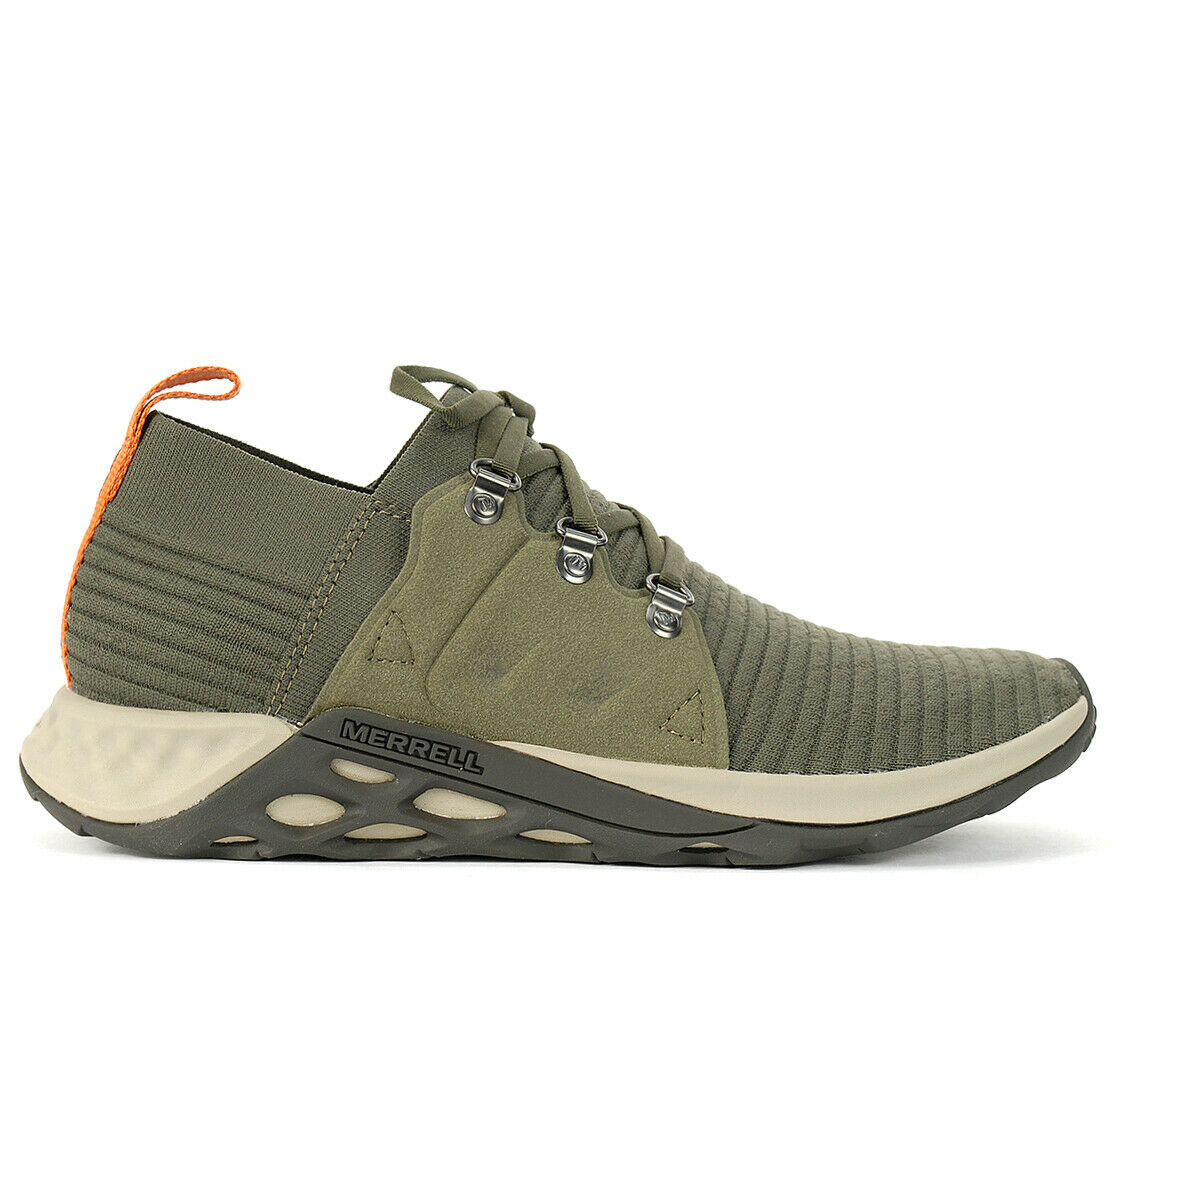 Merrell Men's Range AC+ Sneaker Outdoor Adventure Shoes, Green/Grey, Size 11